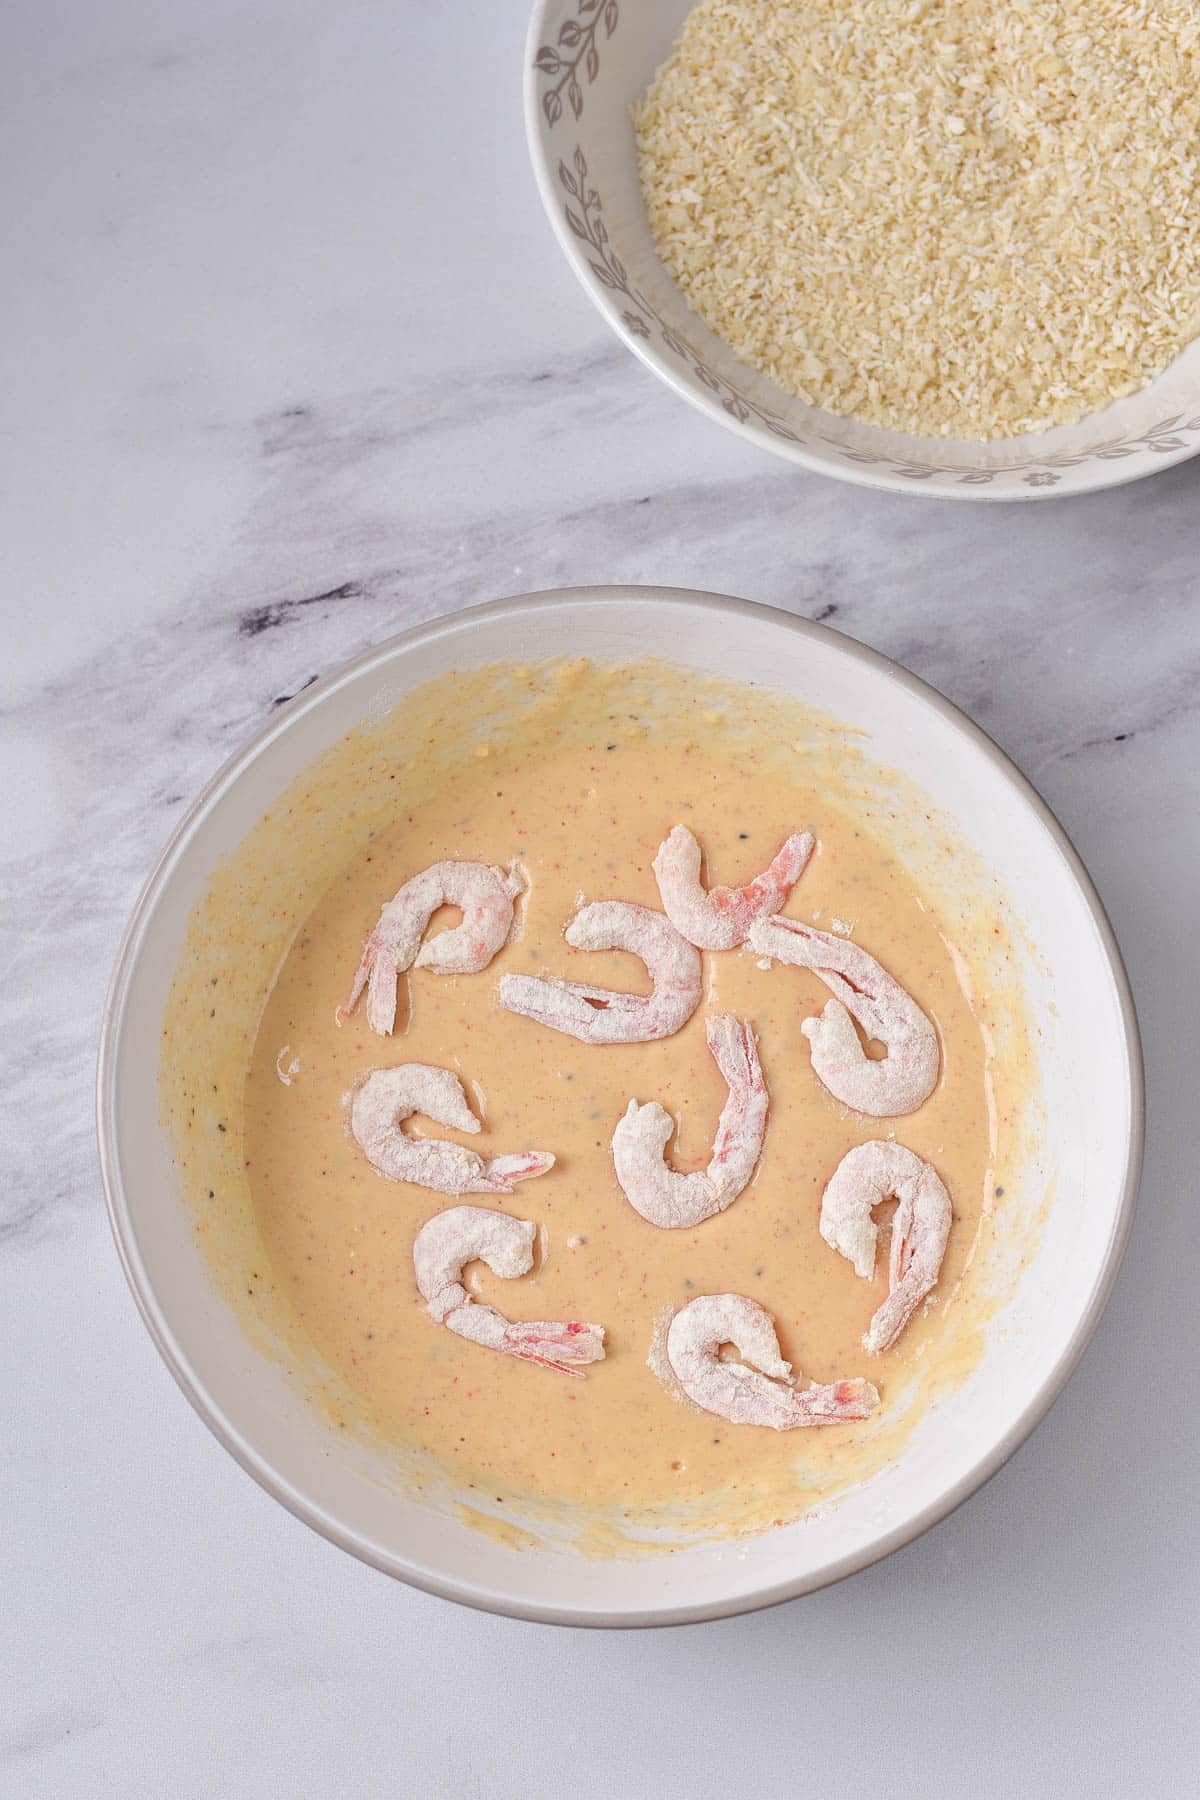 Flour covered shrimp dipped in batter in white bowl